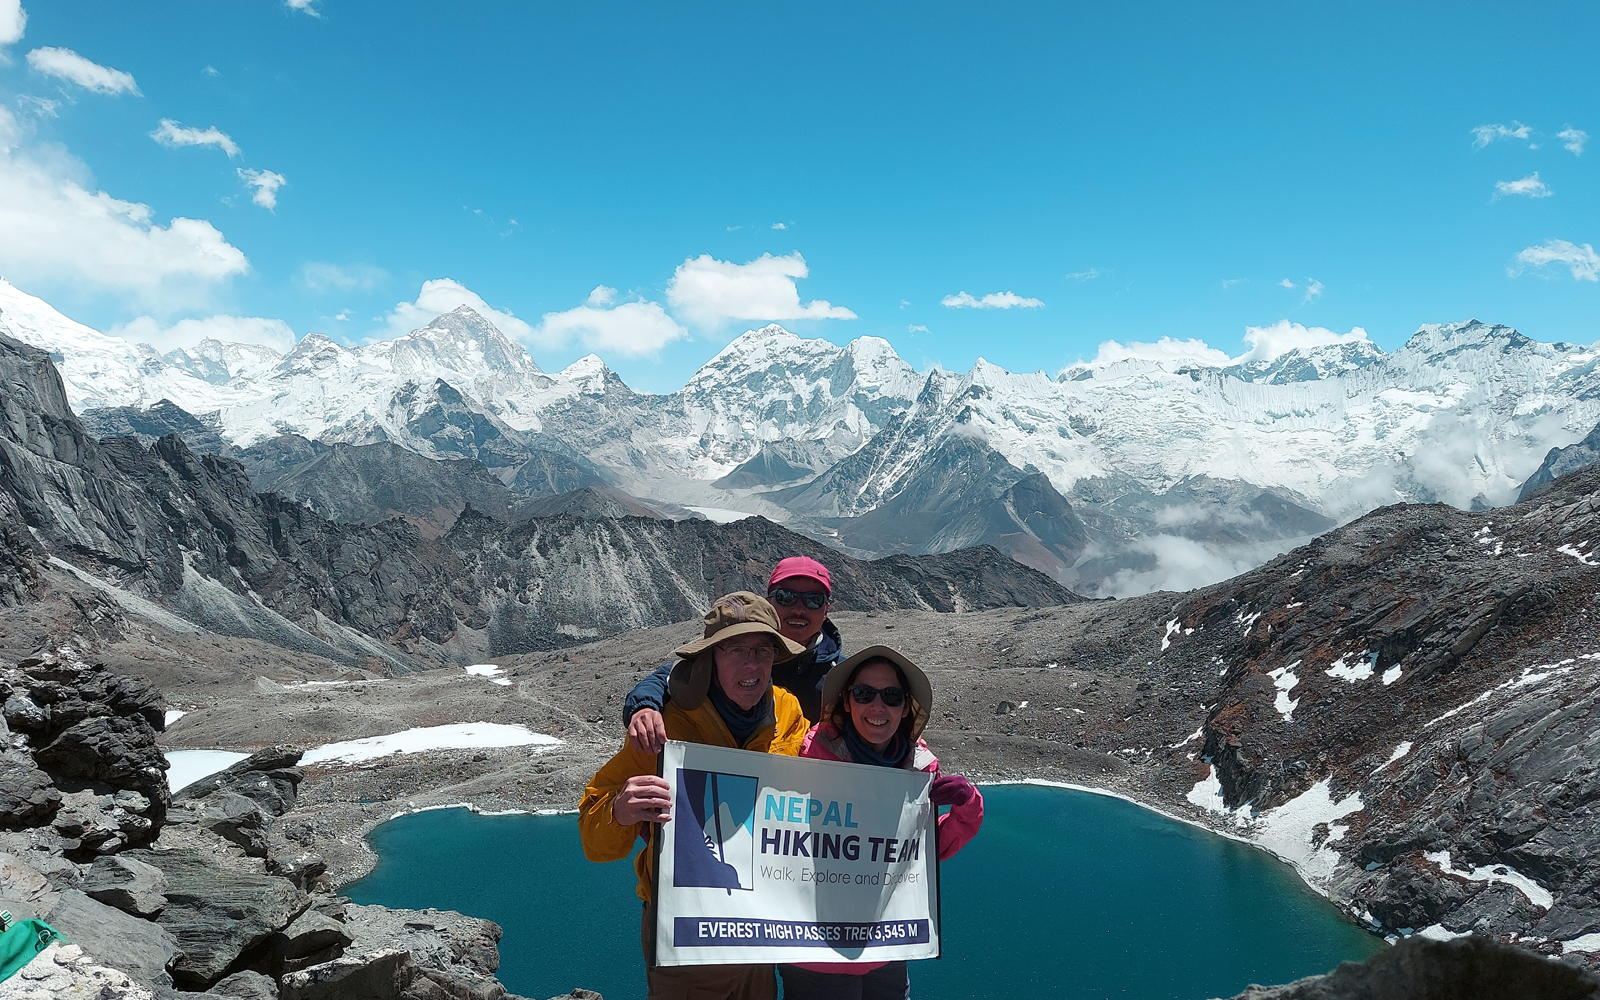 Everest high Passes treks in nepal